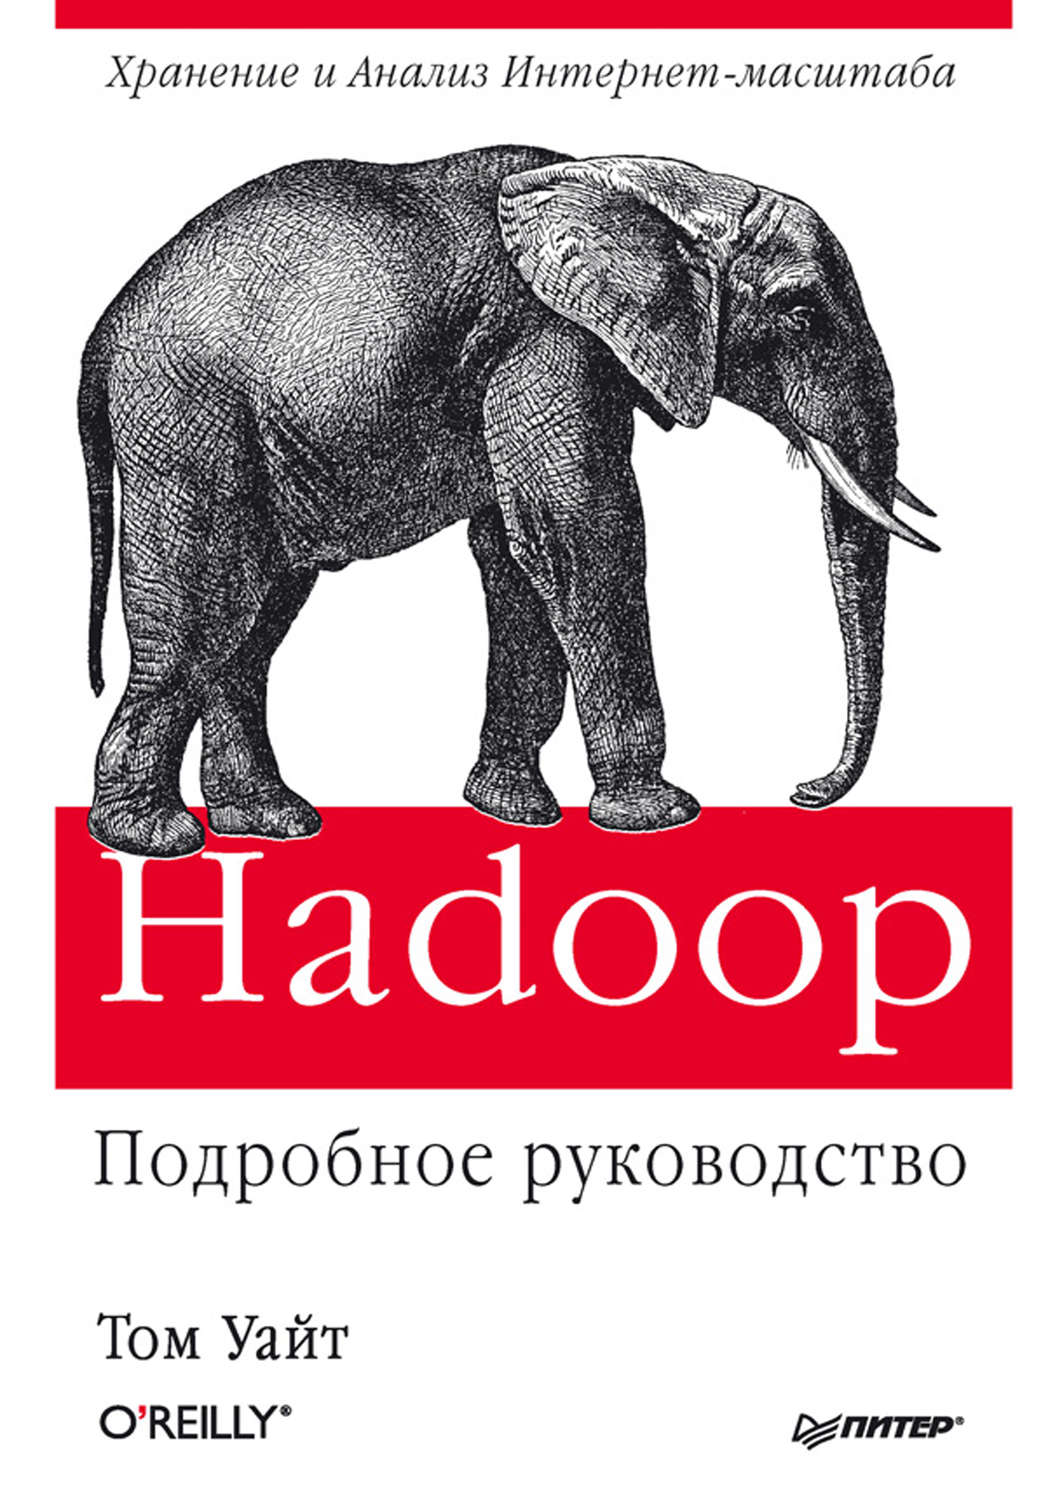 Hadoop подробное руководство pdf скачать